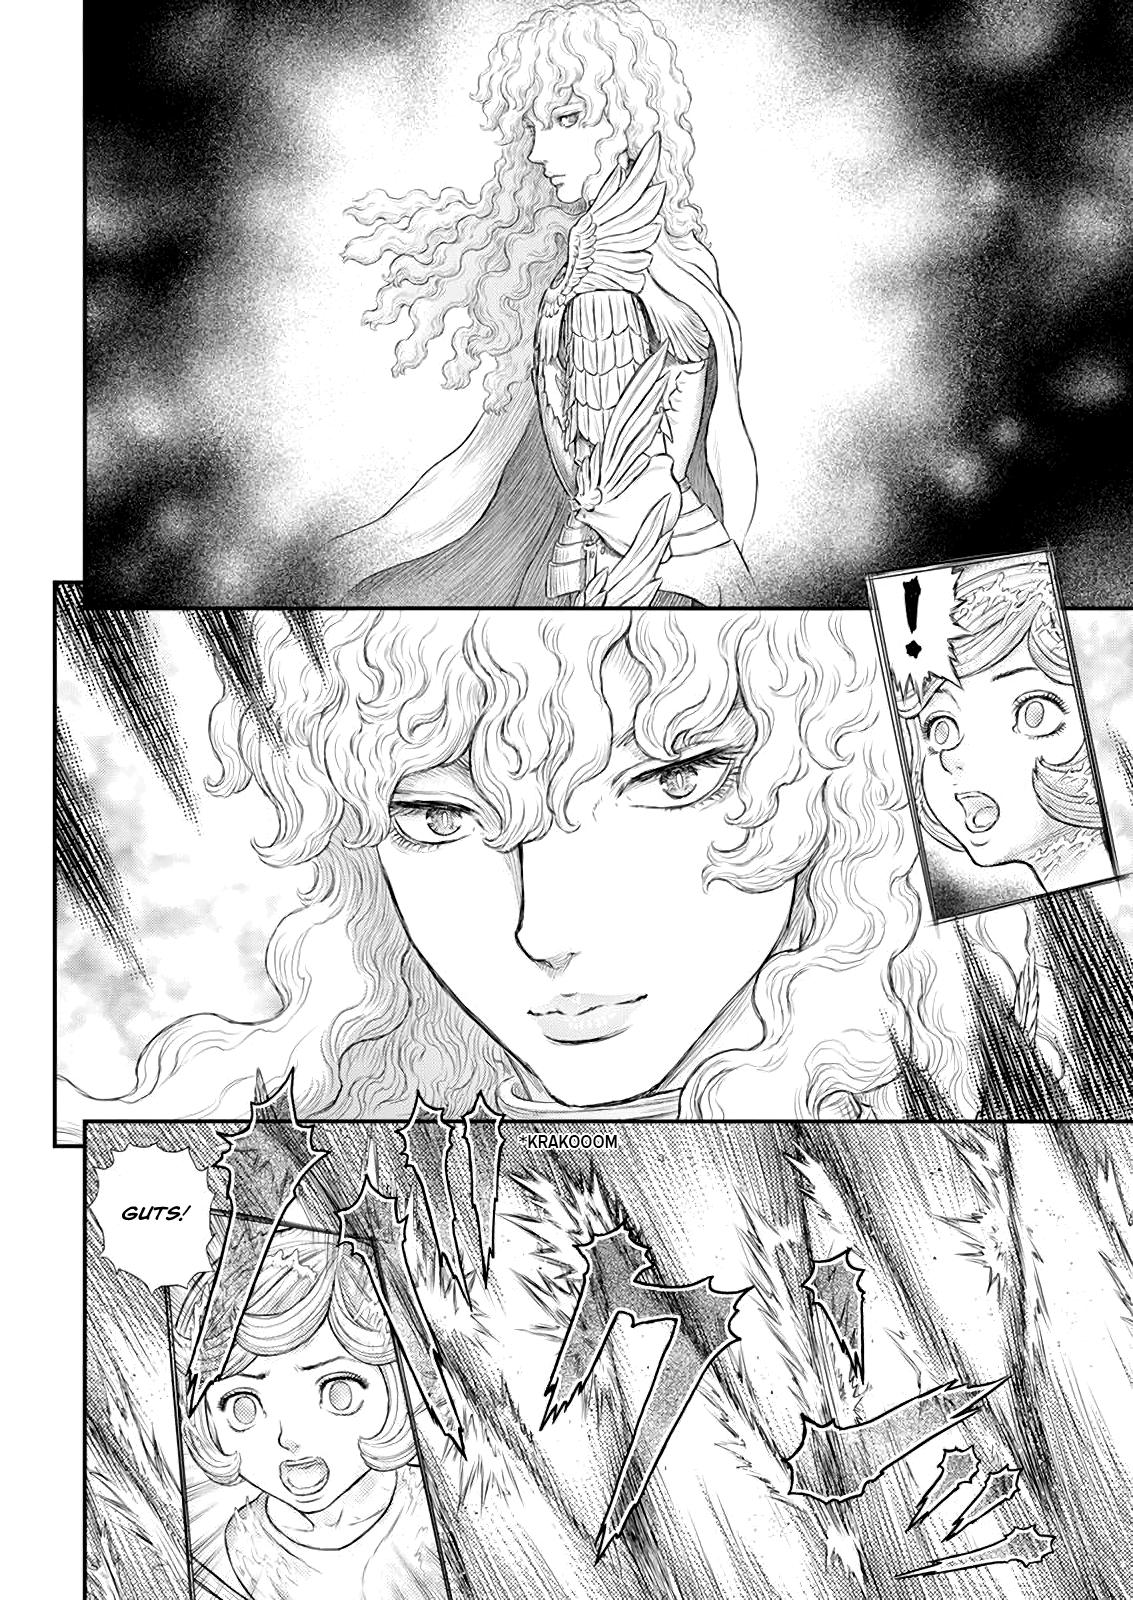 Berserk Manga Chapter 371 image 05